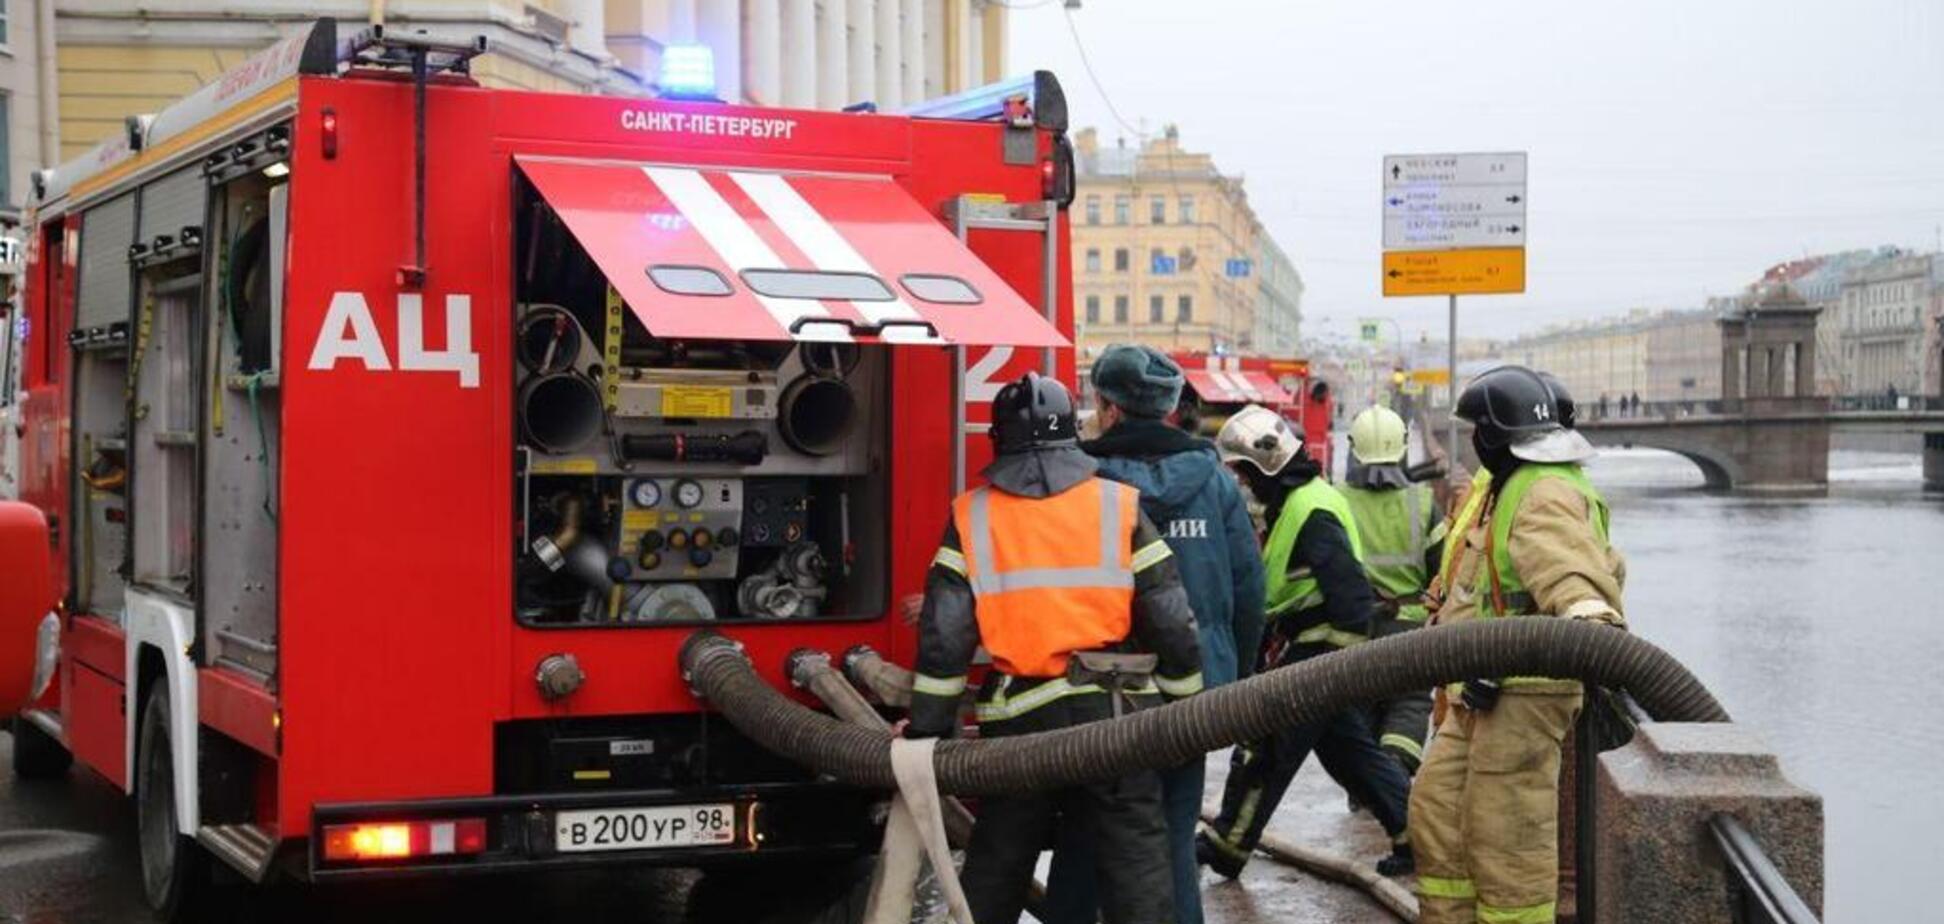 'Люди из окон кричат о помощи': в России загорелся бизнес-центр. Фото и видео